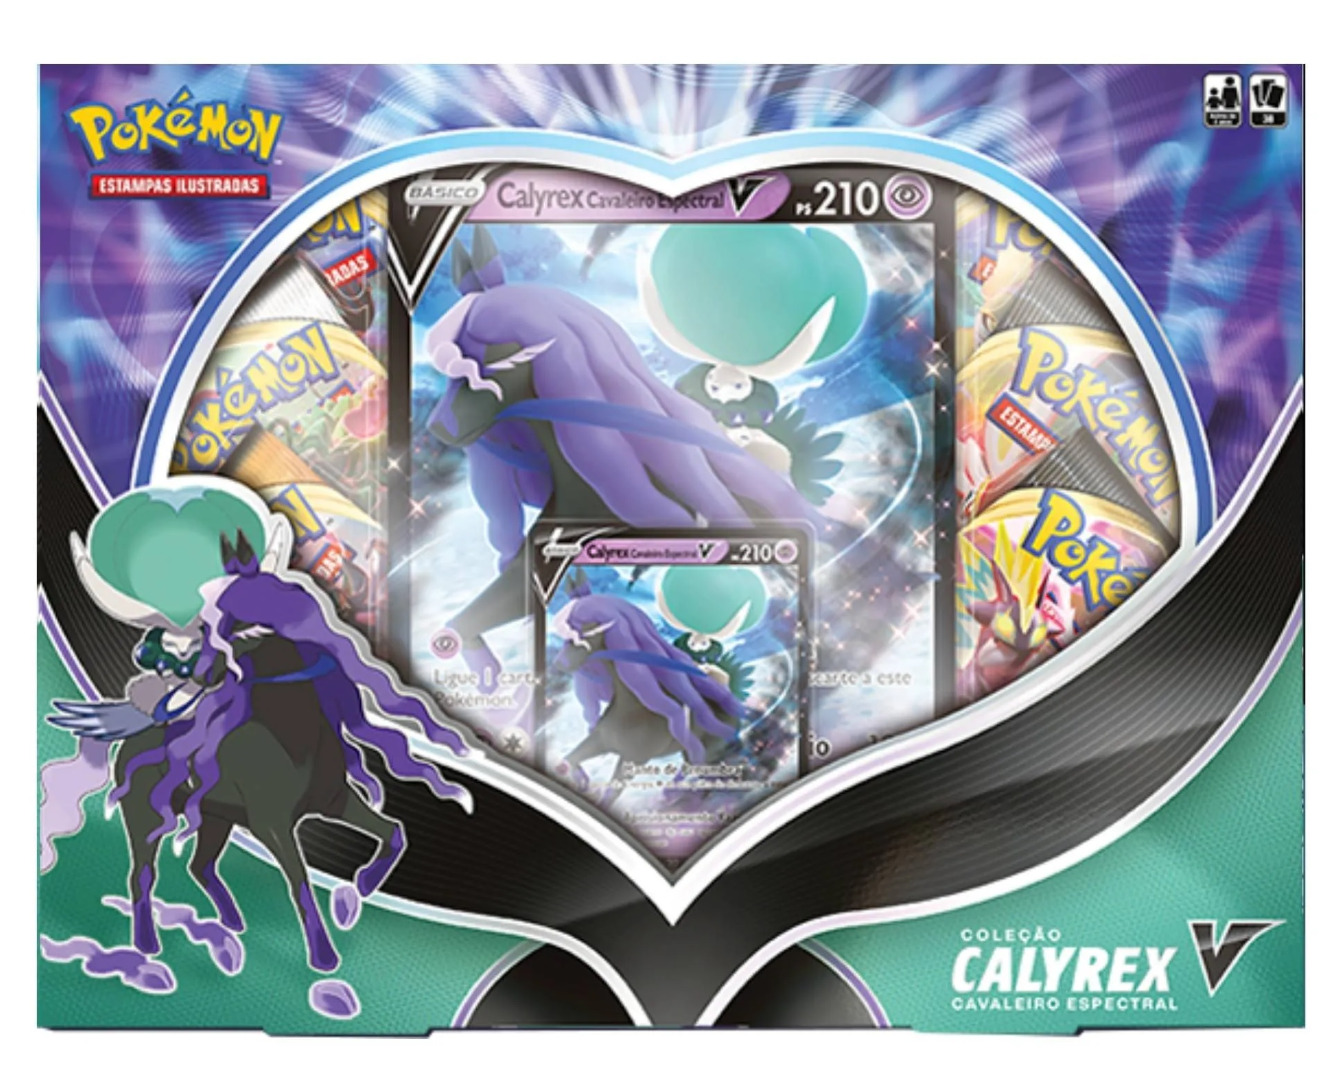 Pokémon - Coleção Calyrex V Cavaleiro Espectral Box (Português)